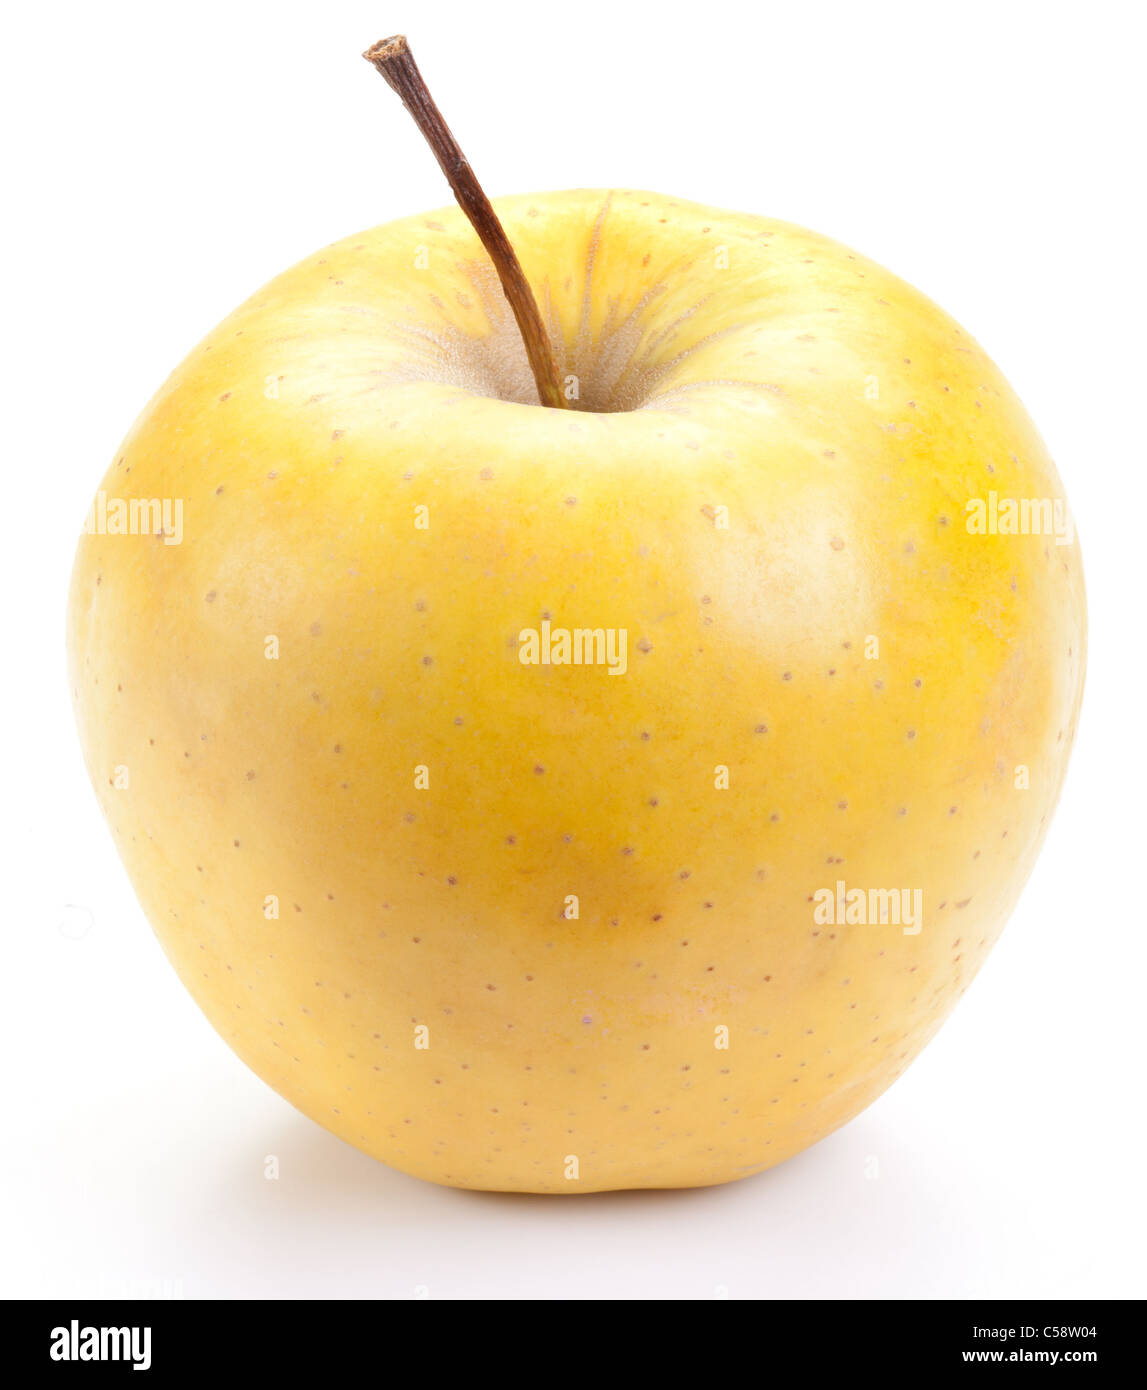 Pomme jaune juteux, isolé sur un fond blanc. Banque D'Images